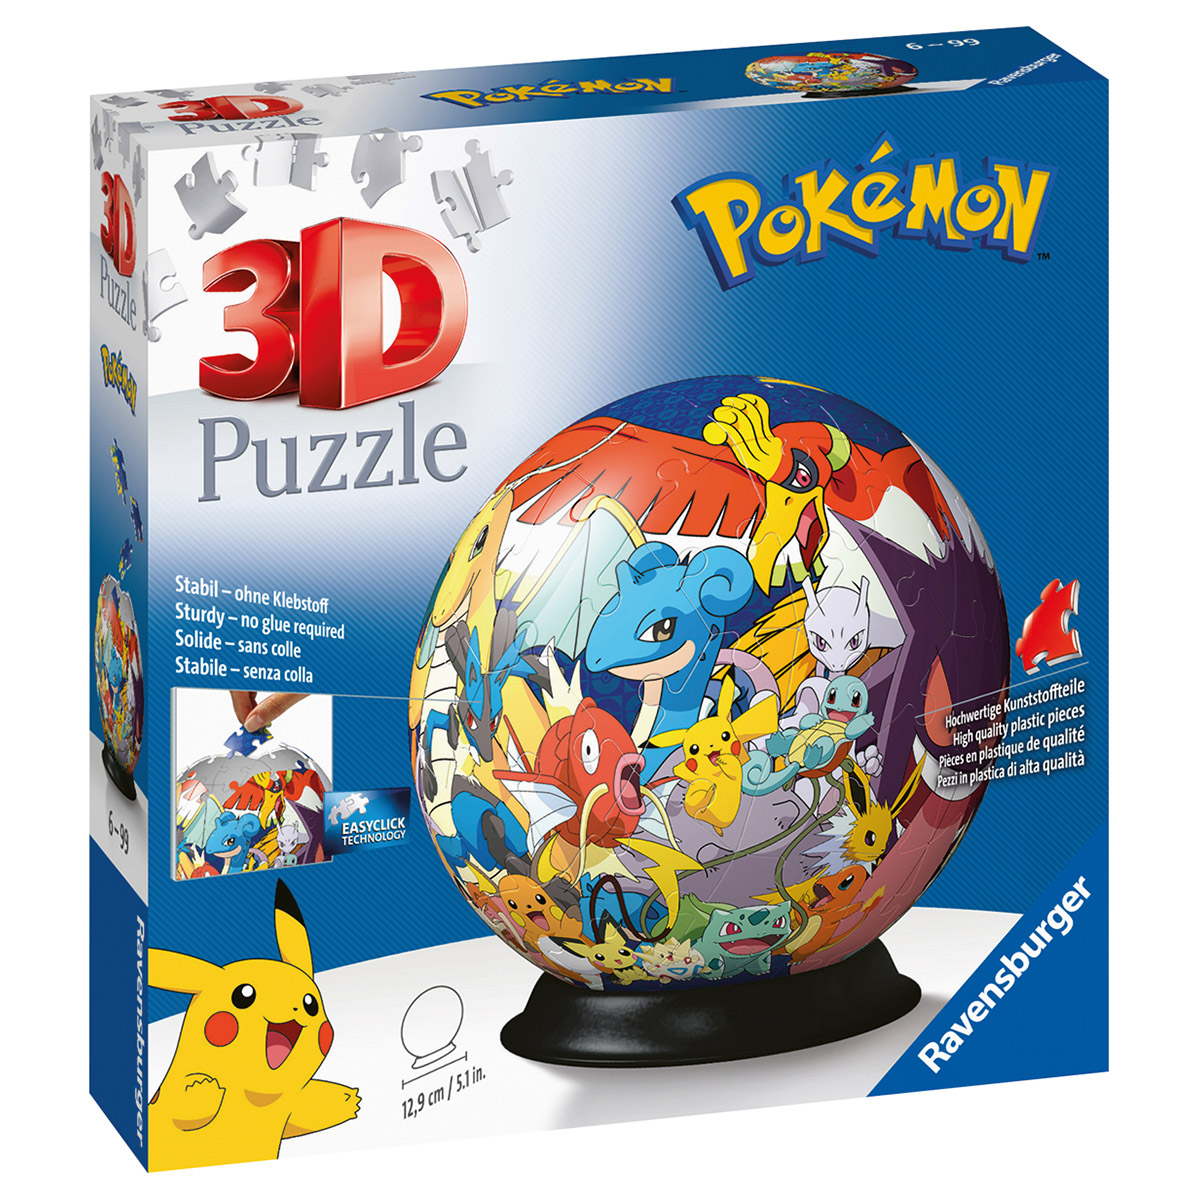 Puzzle 3D Pokémon, 72 pezzi in Vendita Online